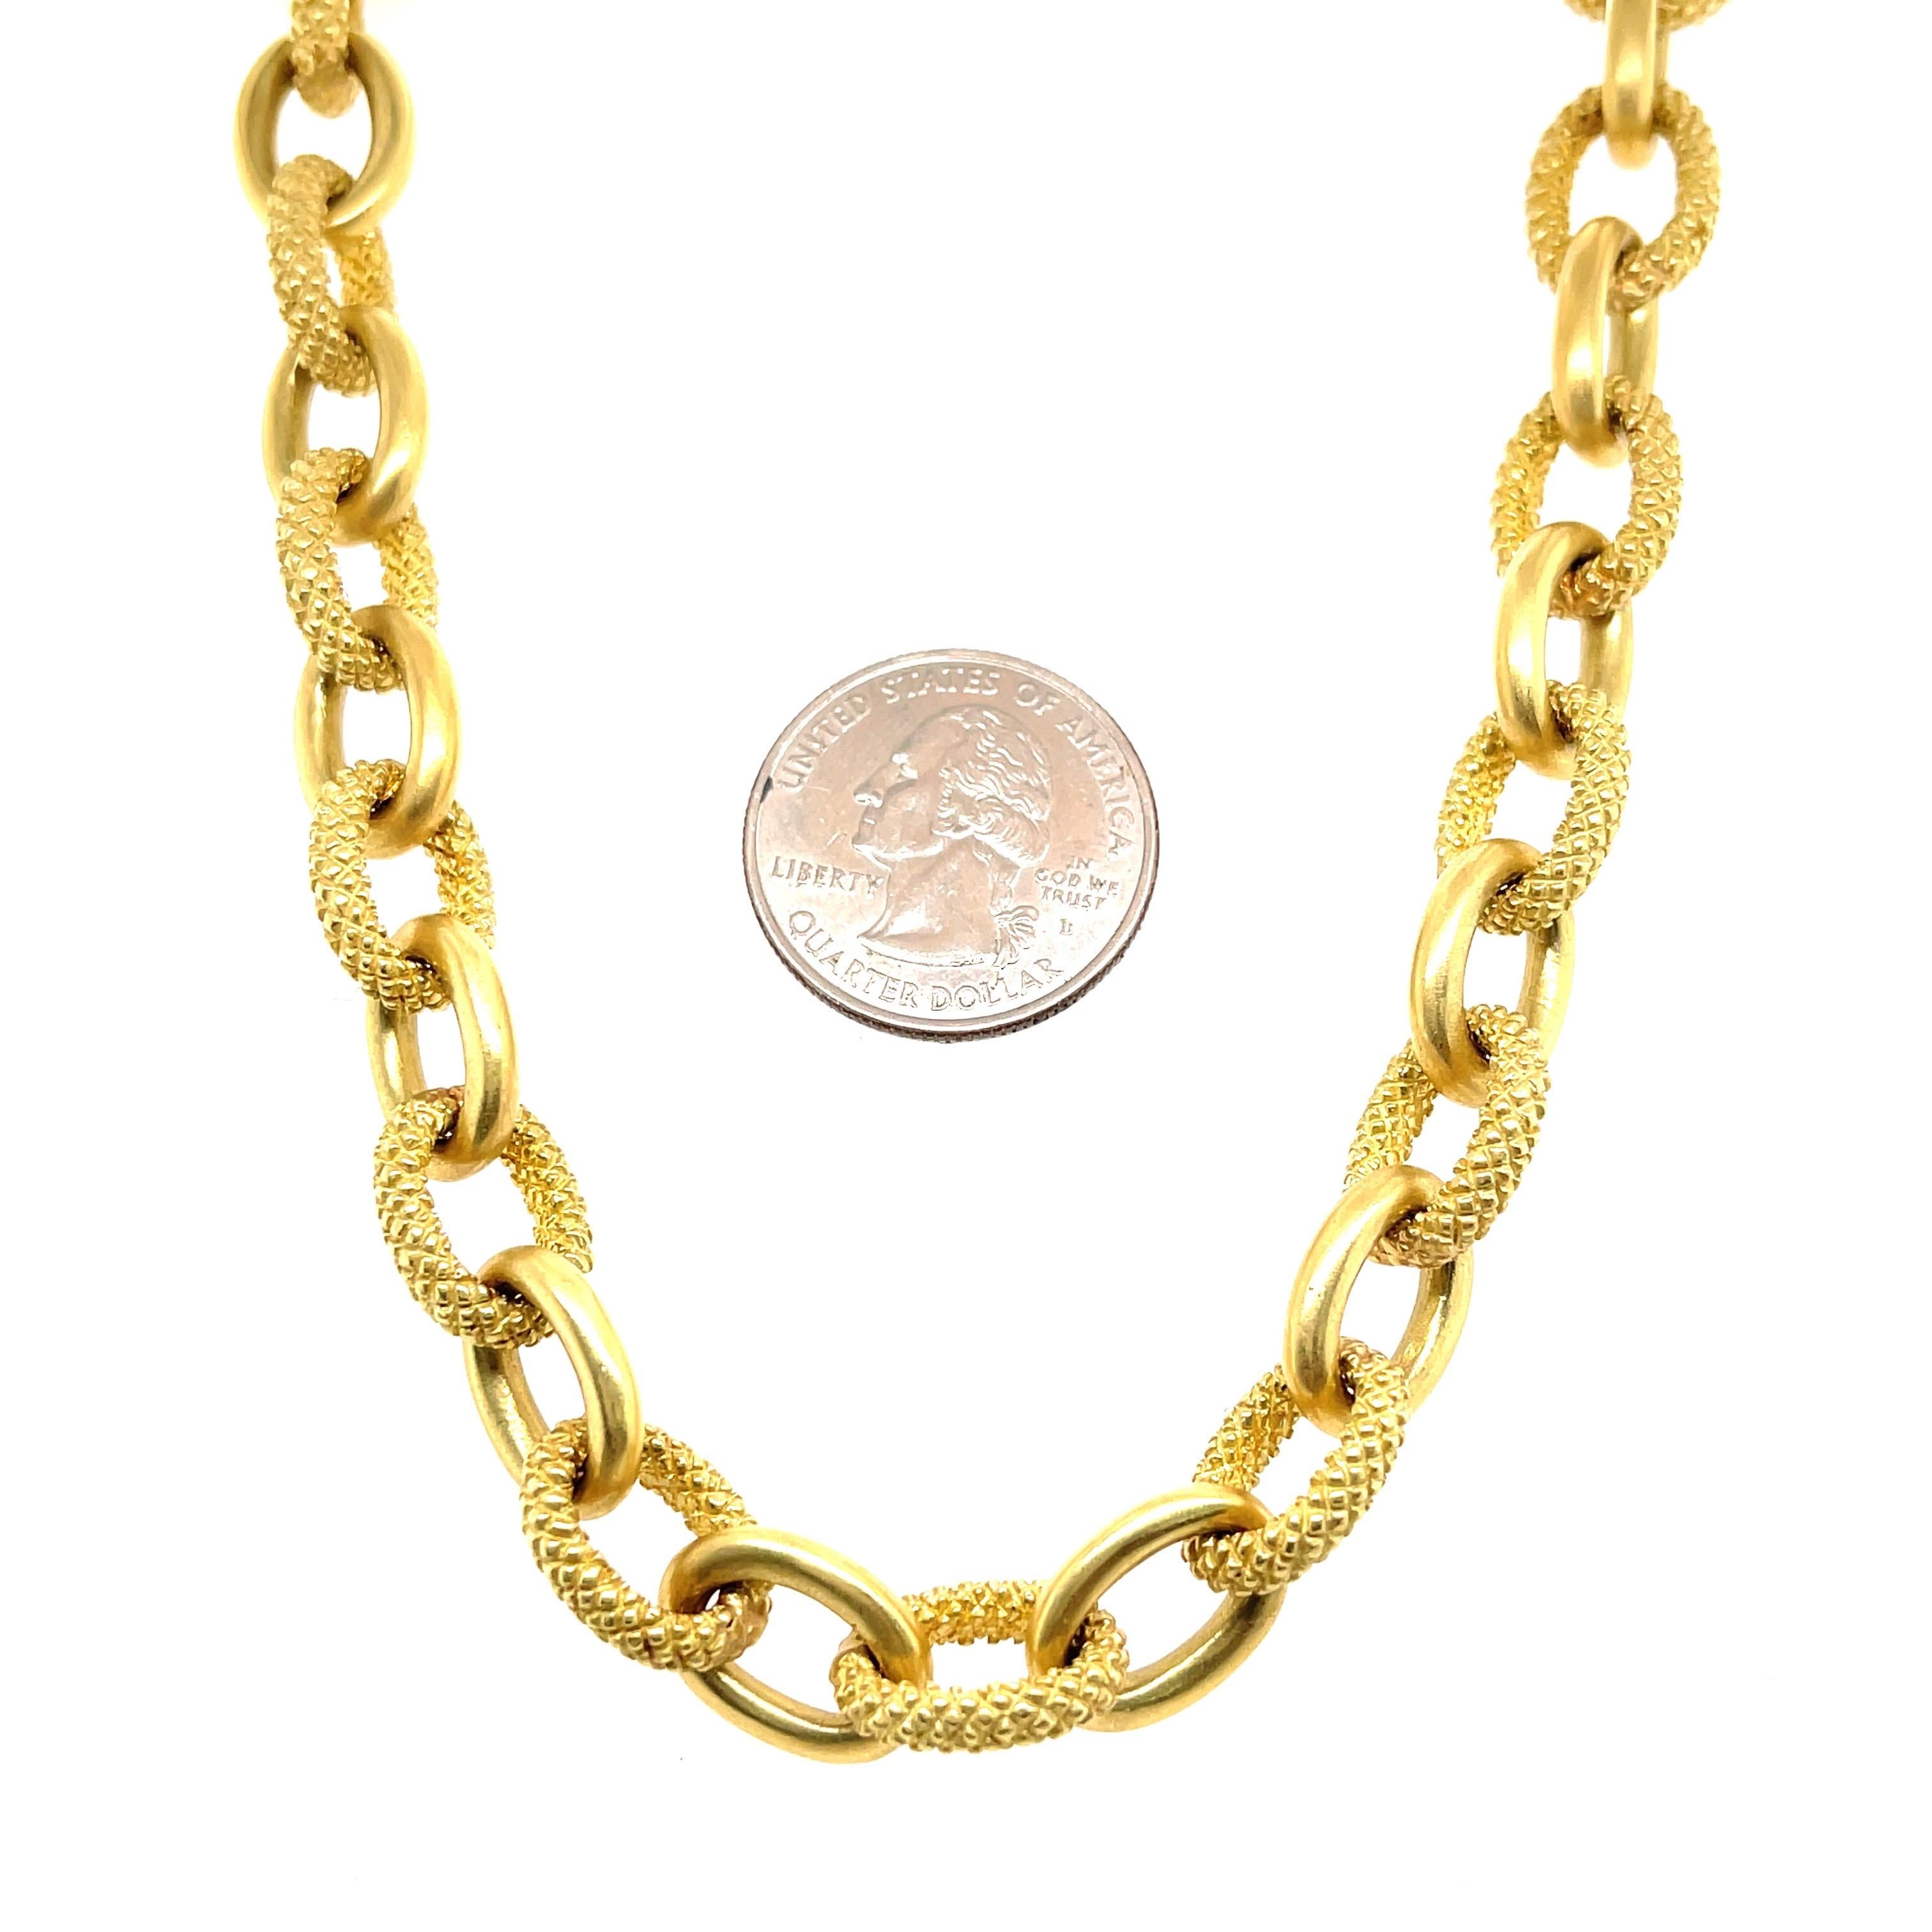 Judith Ripka 18 Karat Gelbgold Halskette mit polierten und perlenbesetzten Gliedern mit einem Gewicht von 135,9 Gramm.